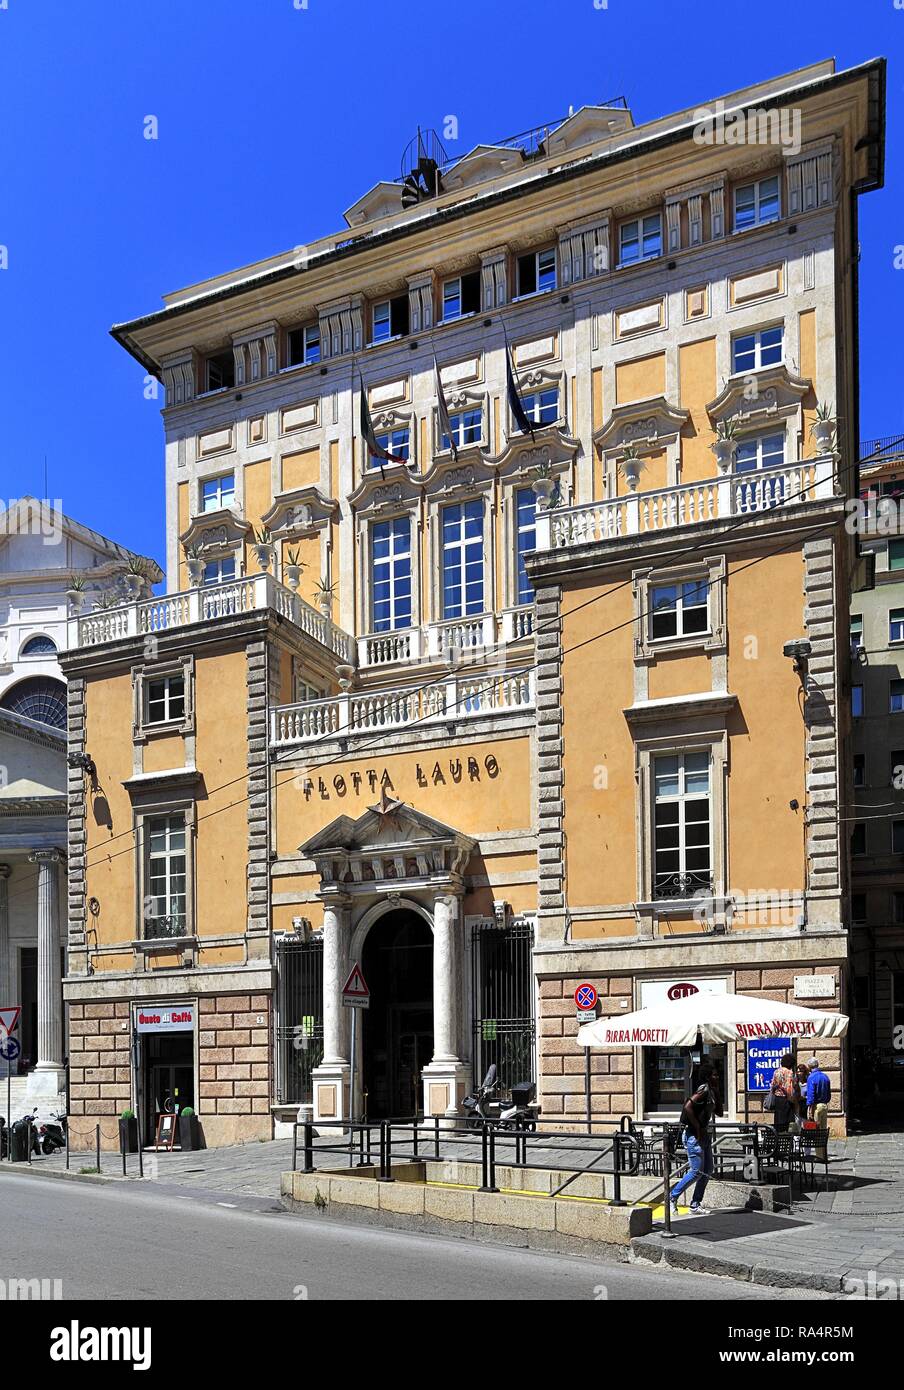 Wlochy - Ligurie - Gênes - centrum - hotel przy placu Piazza della Nunziata Italie - Ligurie - Gênes - centre ville - Piazza della Nunziata square Banque D'Images